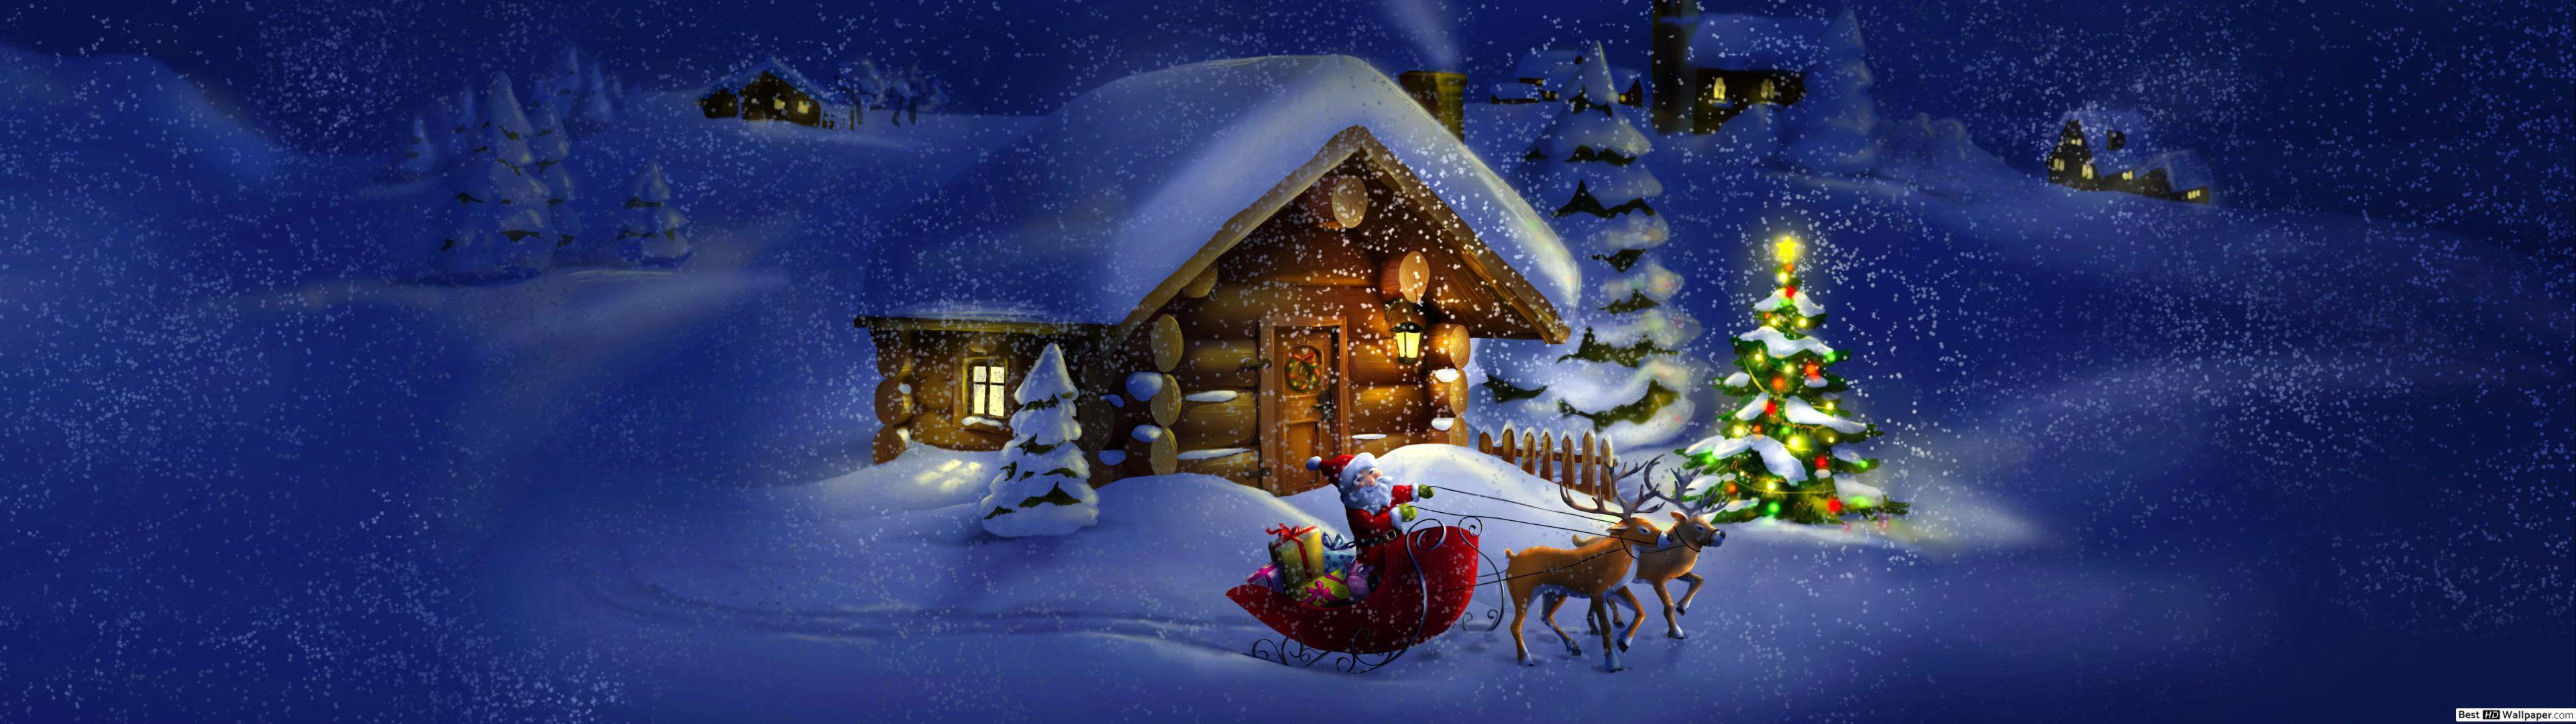 3840x1080 Christmas Wallpapers - Top Free 3840x1080 Christmas ...